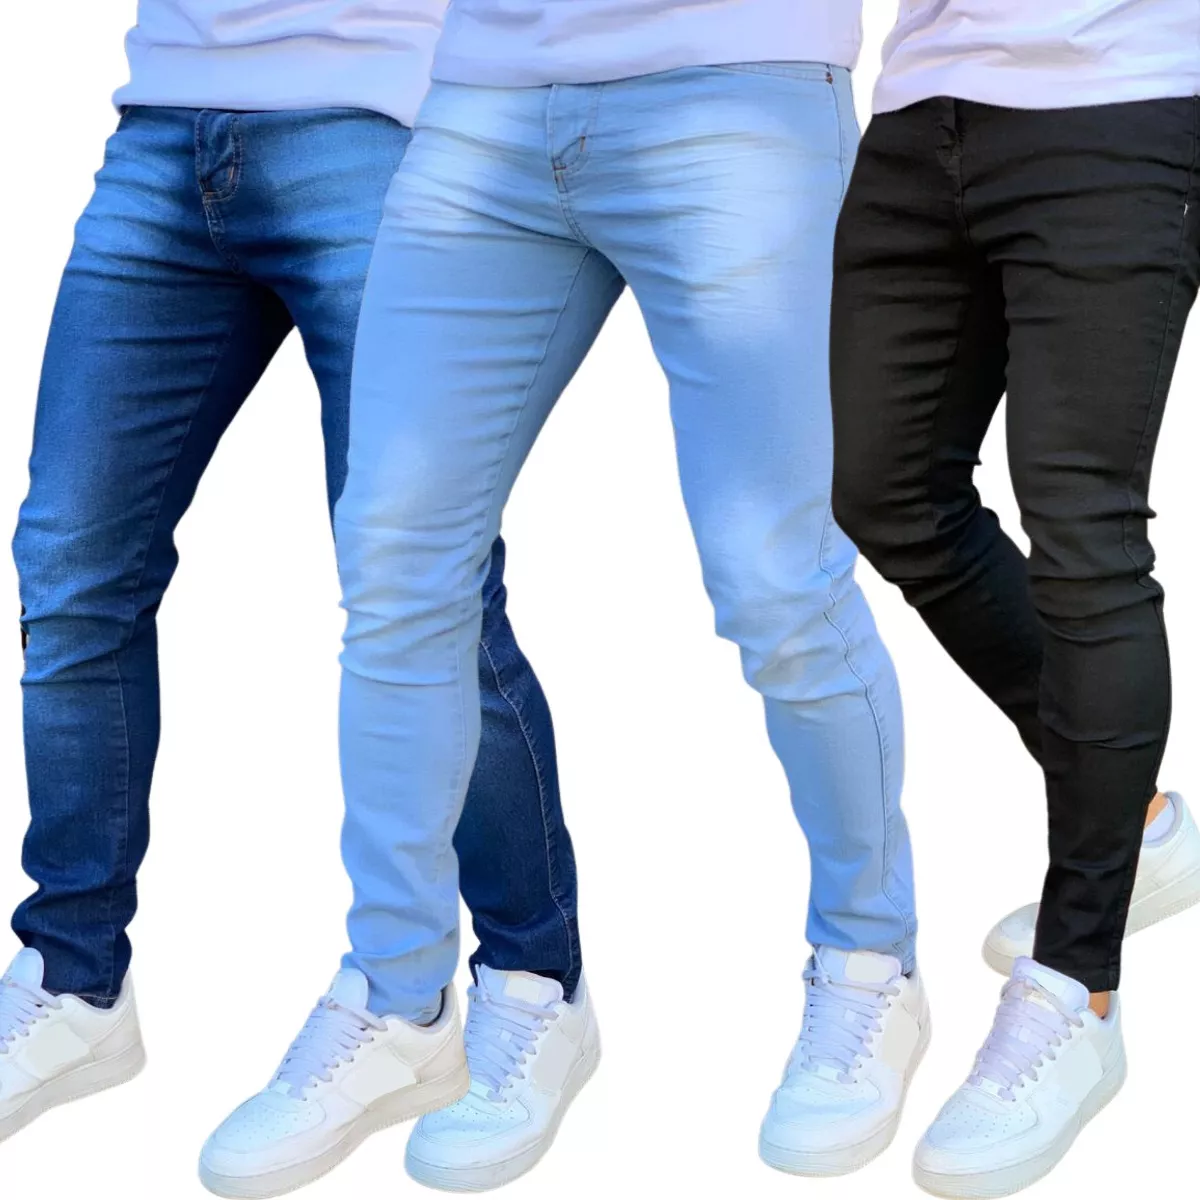 Kit 3 Calça Jeans Skinny Masculina Com Lycra Estica Muito Nf, Tamanhos 36 ao 48